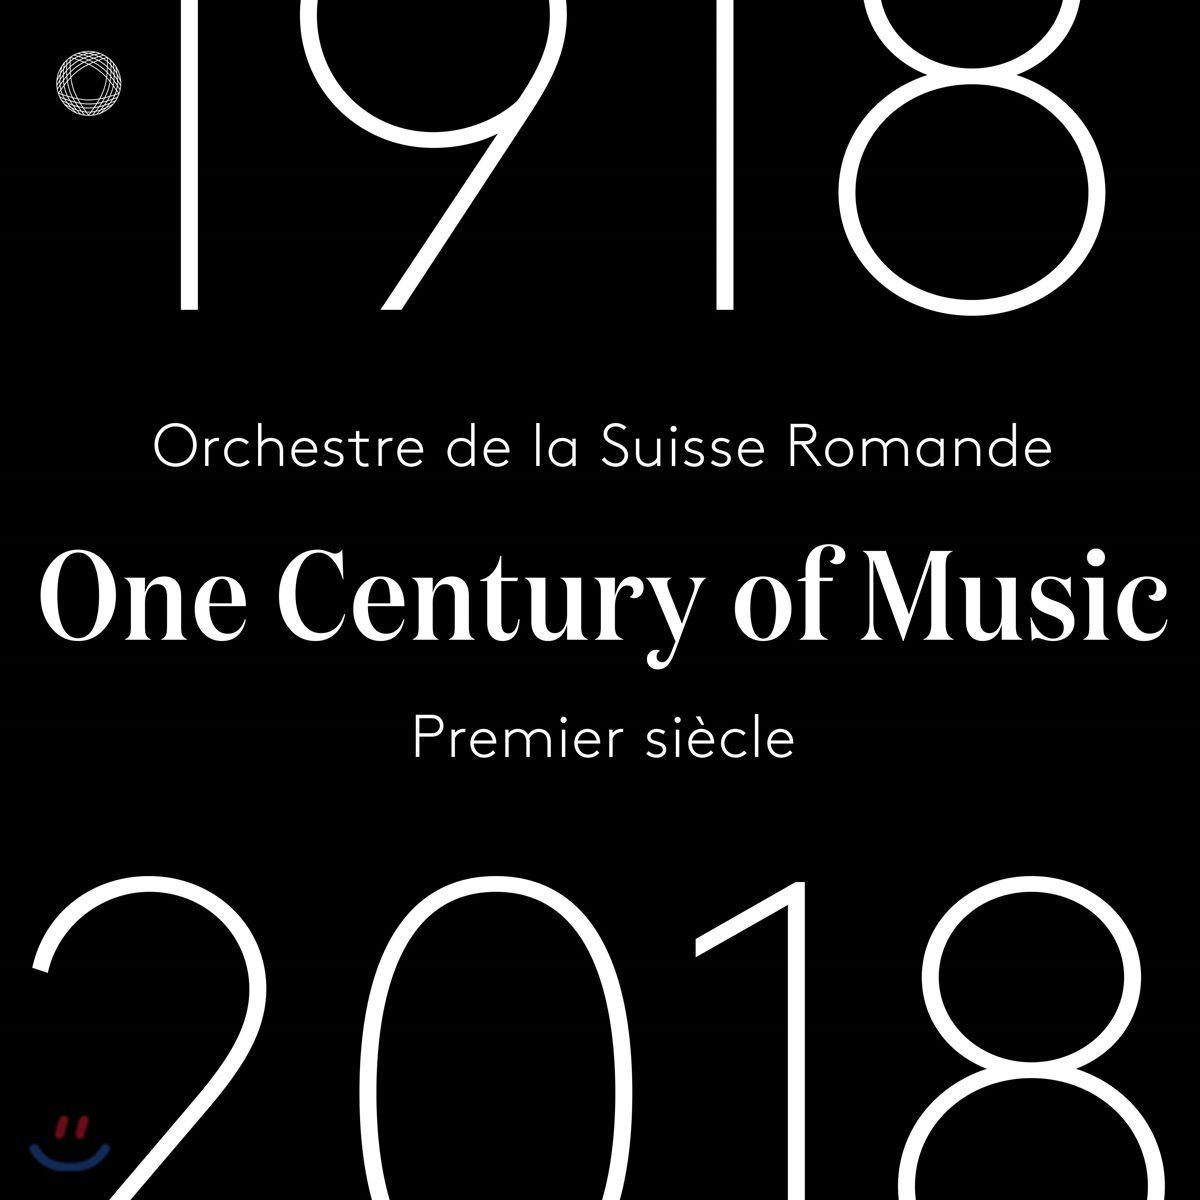 스위스 로망드 관현악단 100주년 기념 앨범 (Orchestre de la Suisse Romande - One Century of Music 1918-2018) 